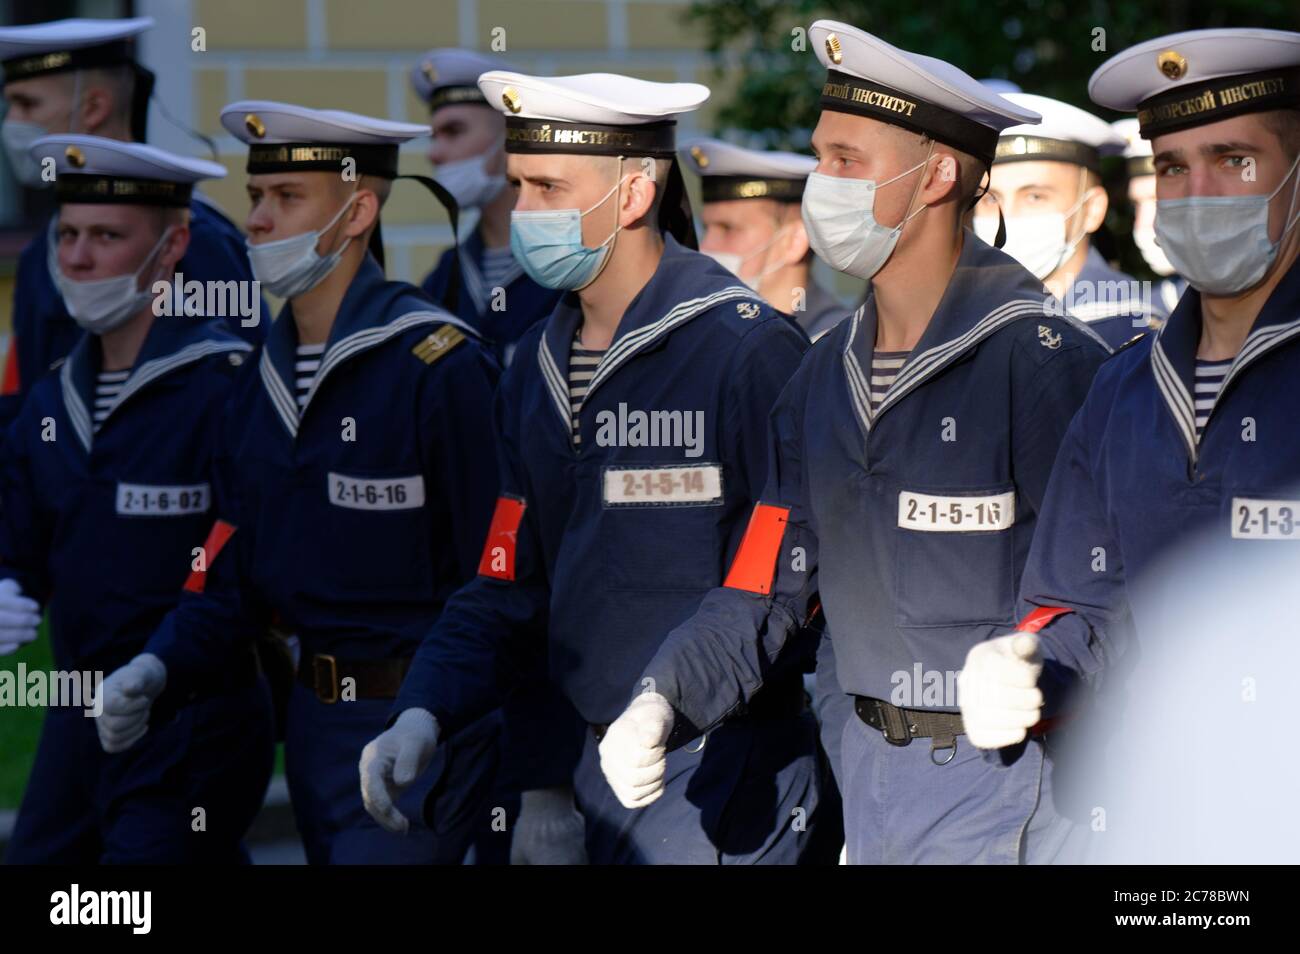 St. Petersburg, Russland - 14. Juli 2020: Generalprobe der Militärparade, die dem Tag der russischen Marine auf dem Senatsplatz gewidmet ist. Die Parade ist das wichtigste Ereignis der Feier, die jährlich am letzten Sonntag im Juli stattfindet Stockfoto